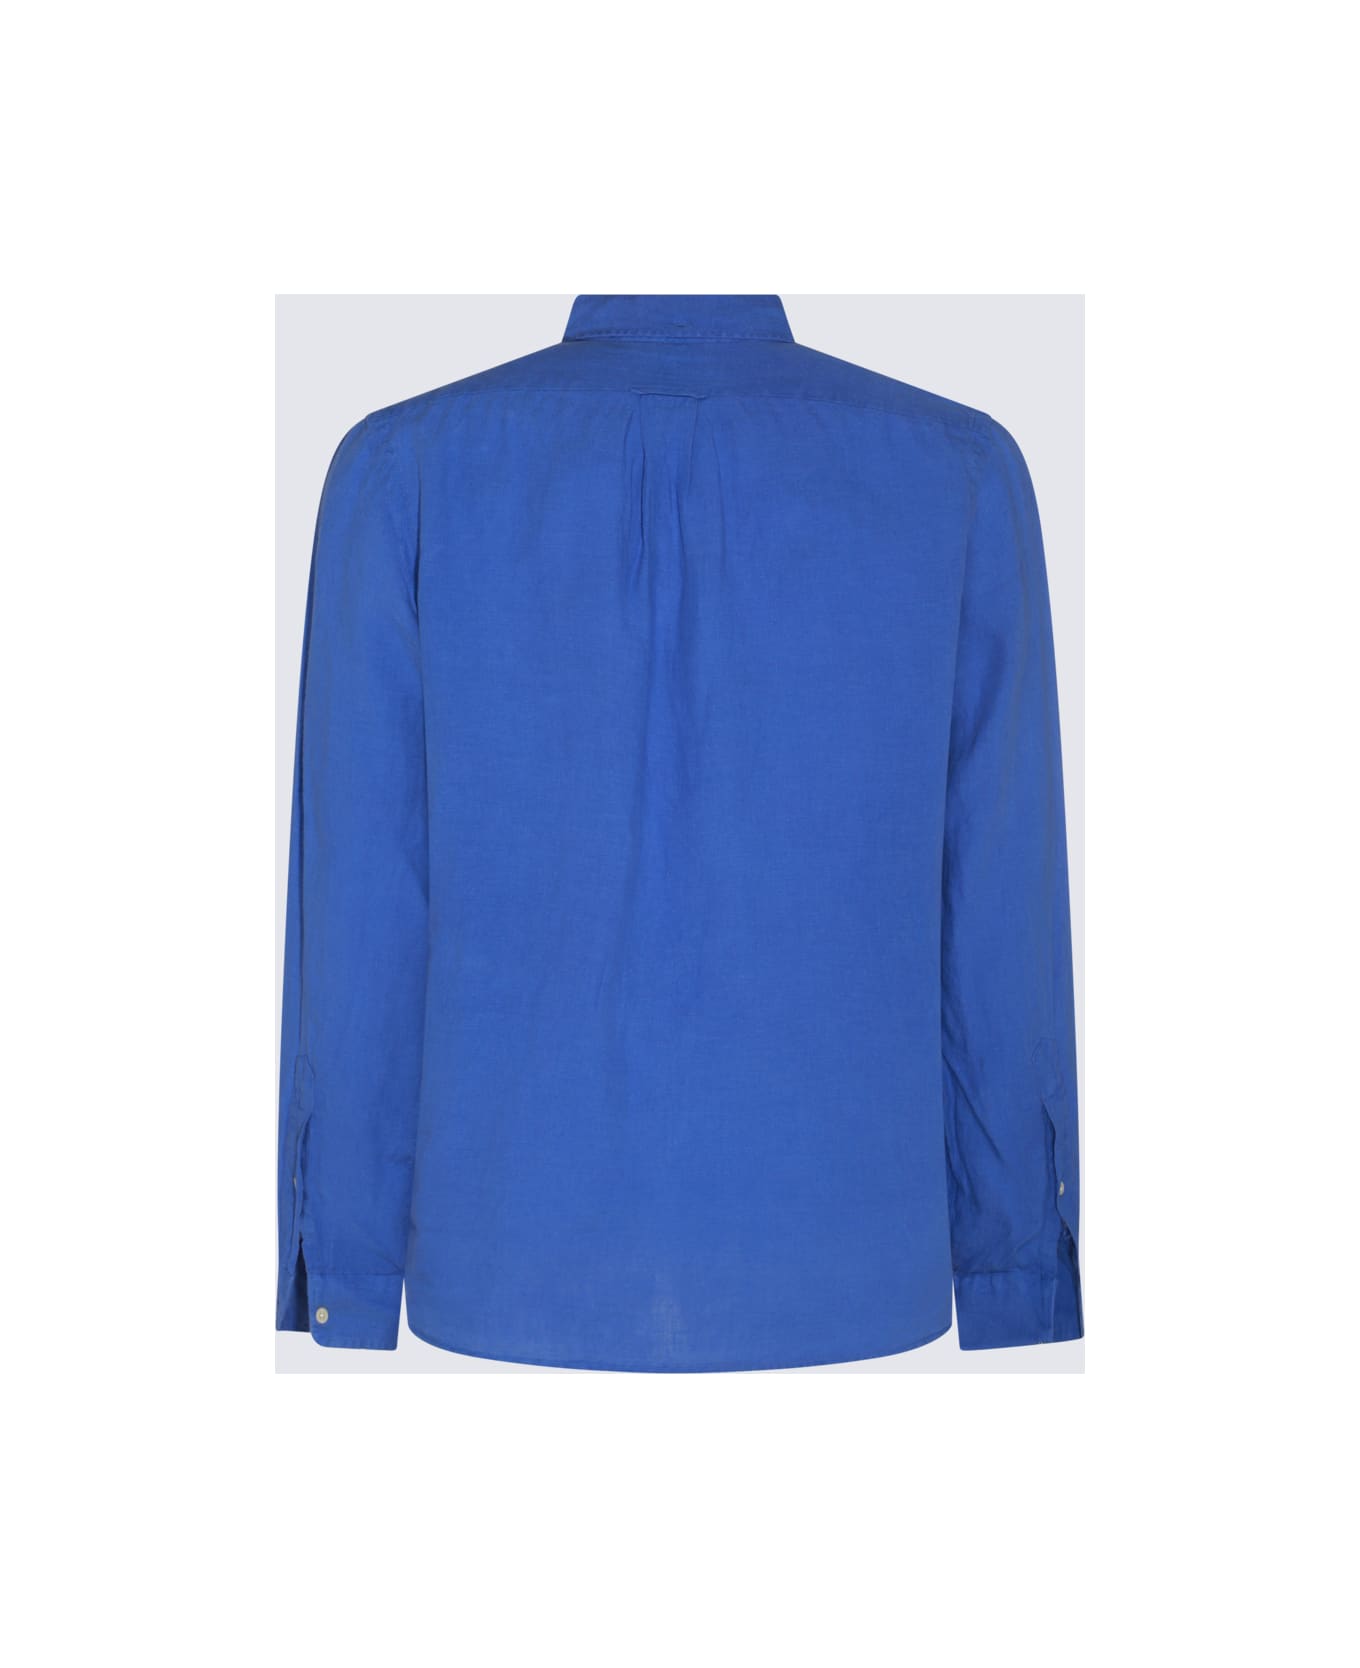 Polo Ralph Lauren Blue Cotton Shirt - SUMMER ROYAL